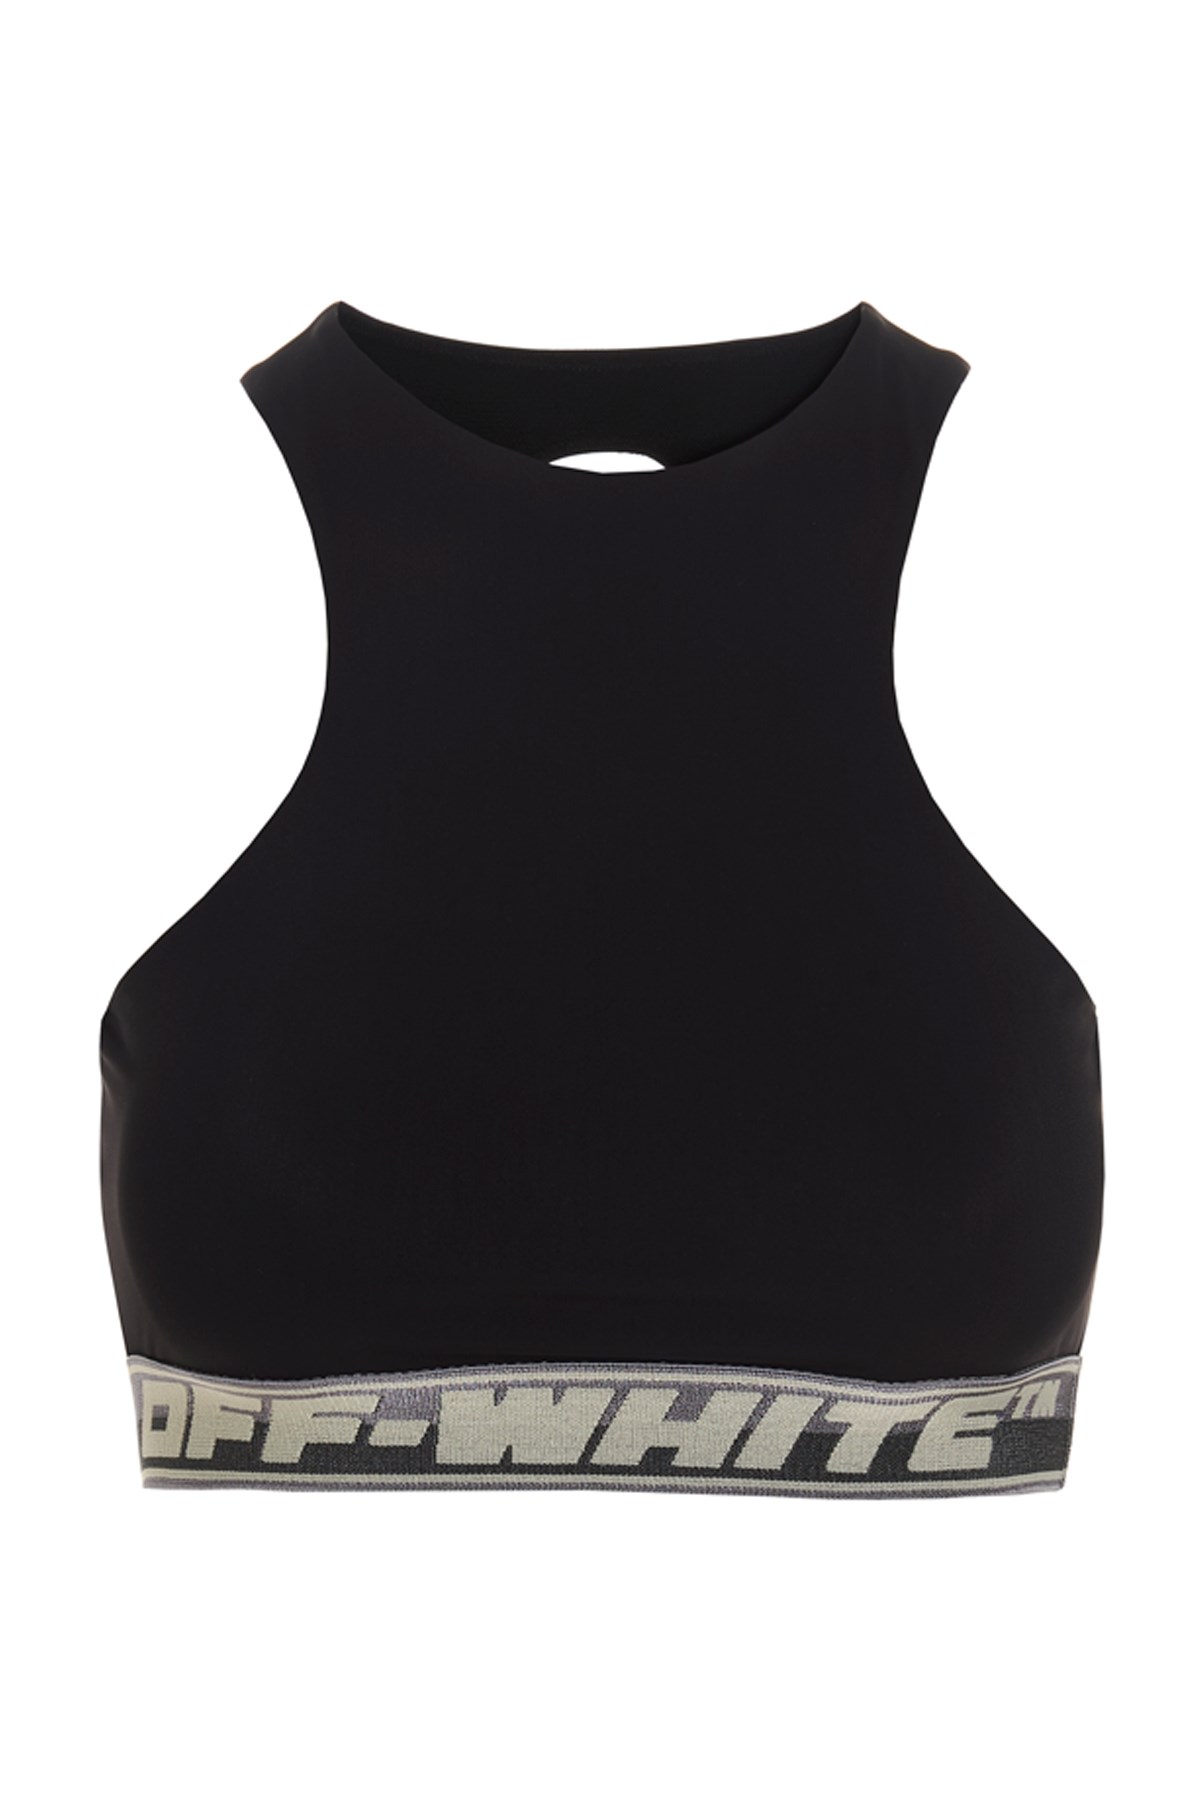 OFF-WHITE ‘Athl Logo Band’ Top